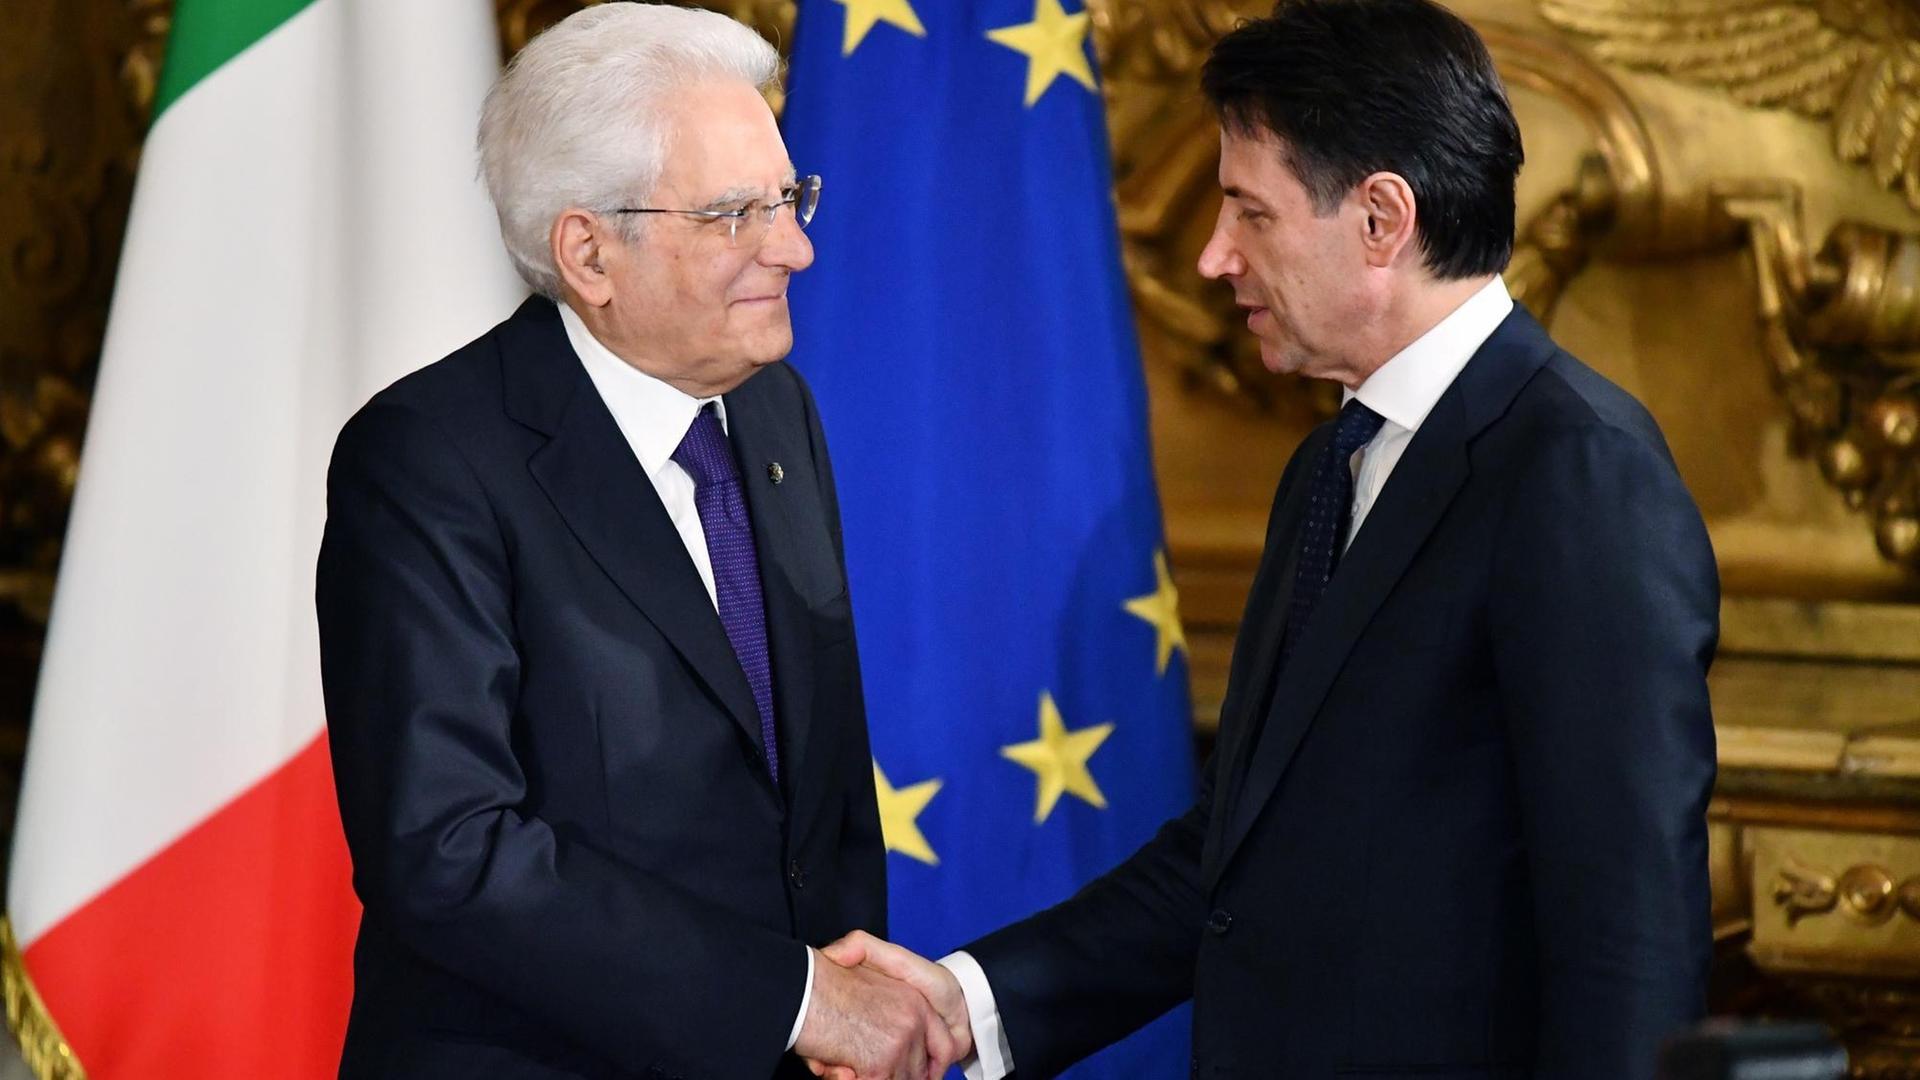 Der neue italienische Regierungschef Conte bei seiner Vereidigung durch Präsident Mattarella